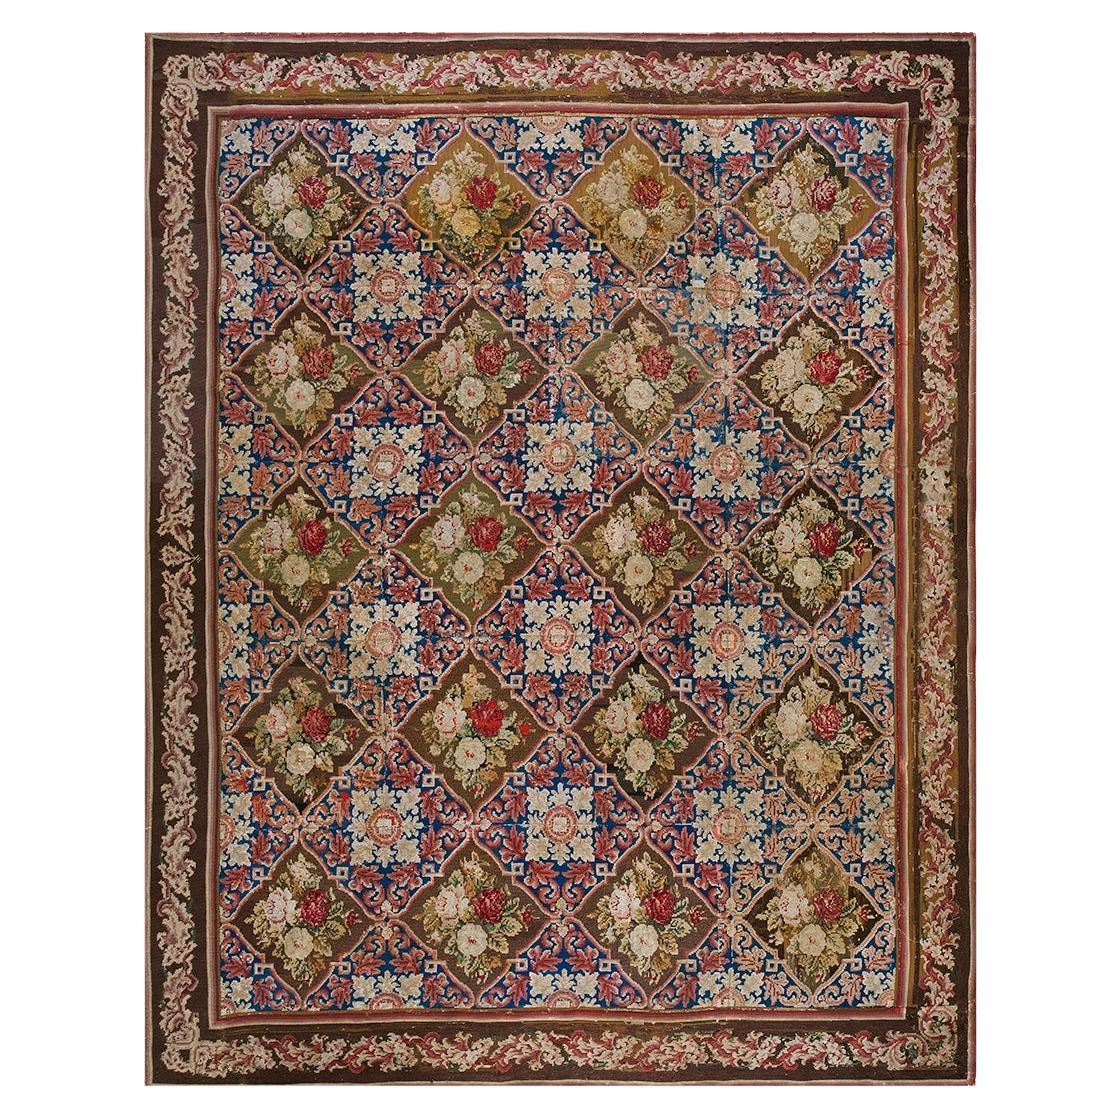 Englischer Gobelinstickerei-Teppich aus dem 19. Jahrhundert ( 7'6" x 9'3" - 230 x 282")